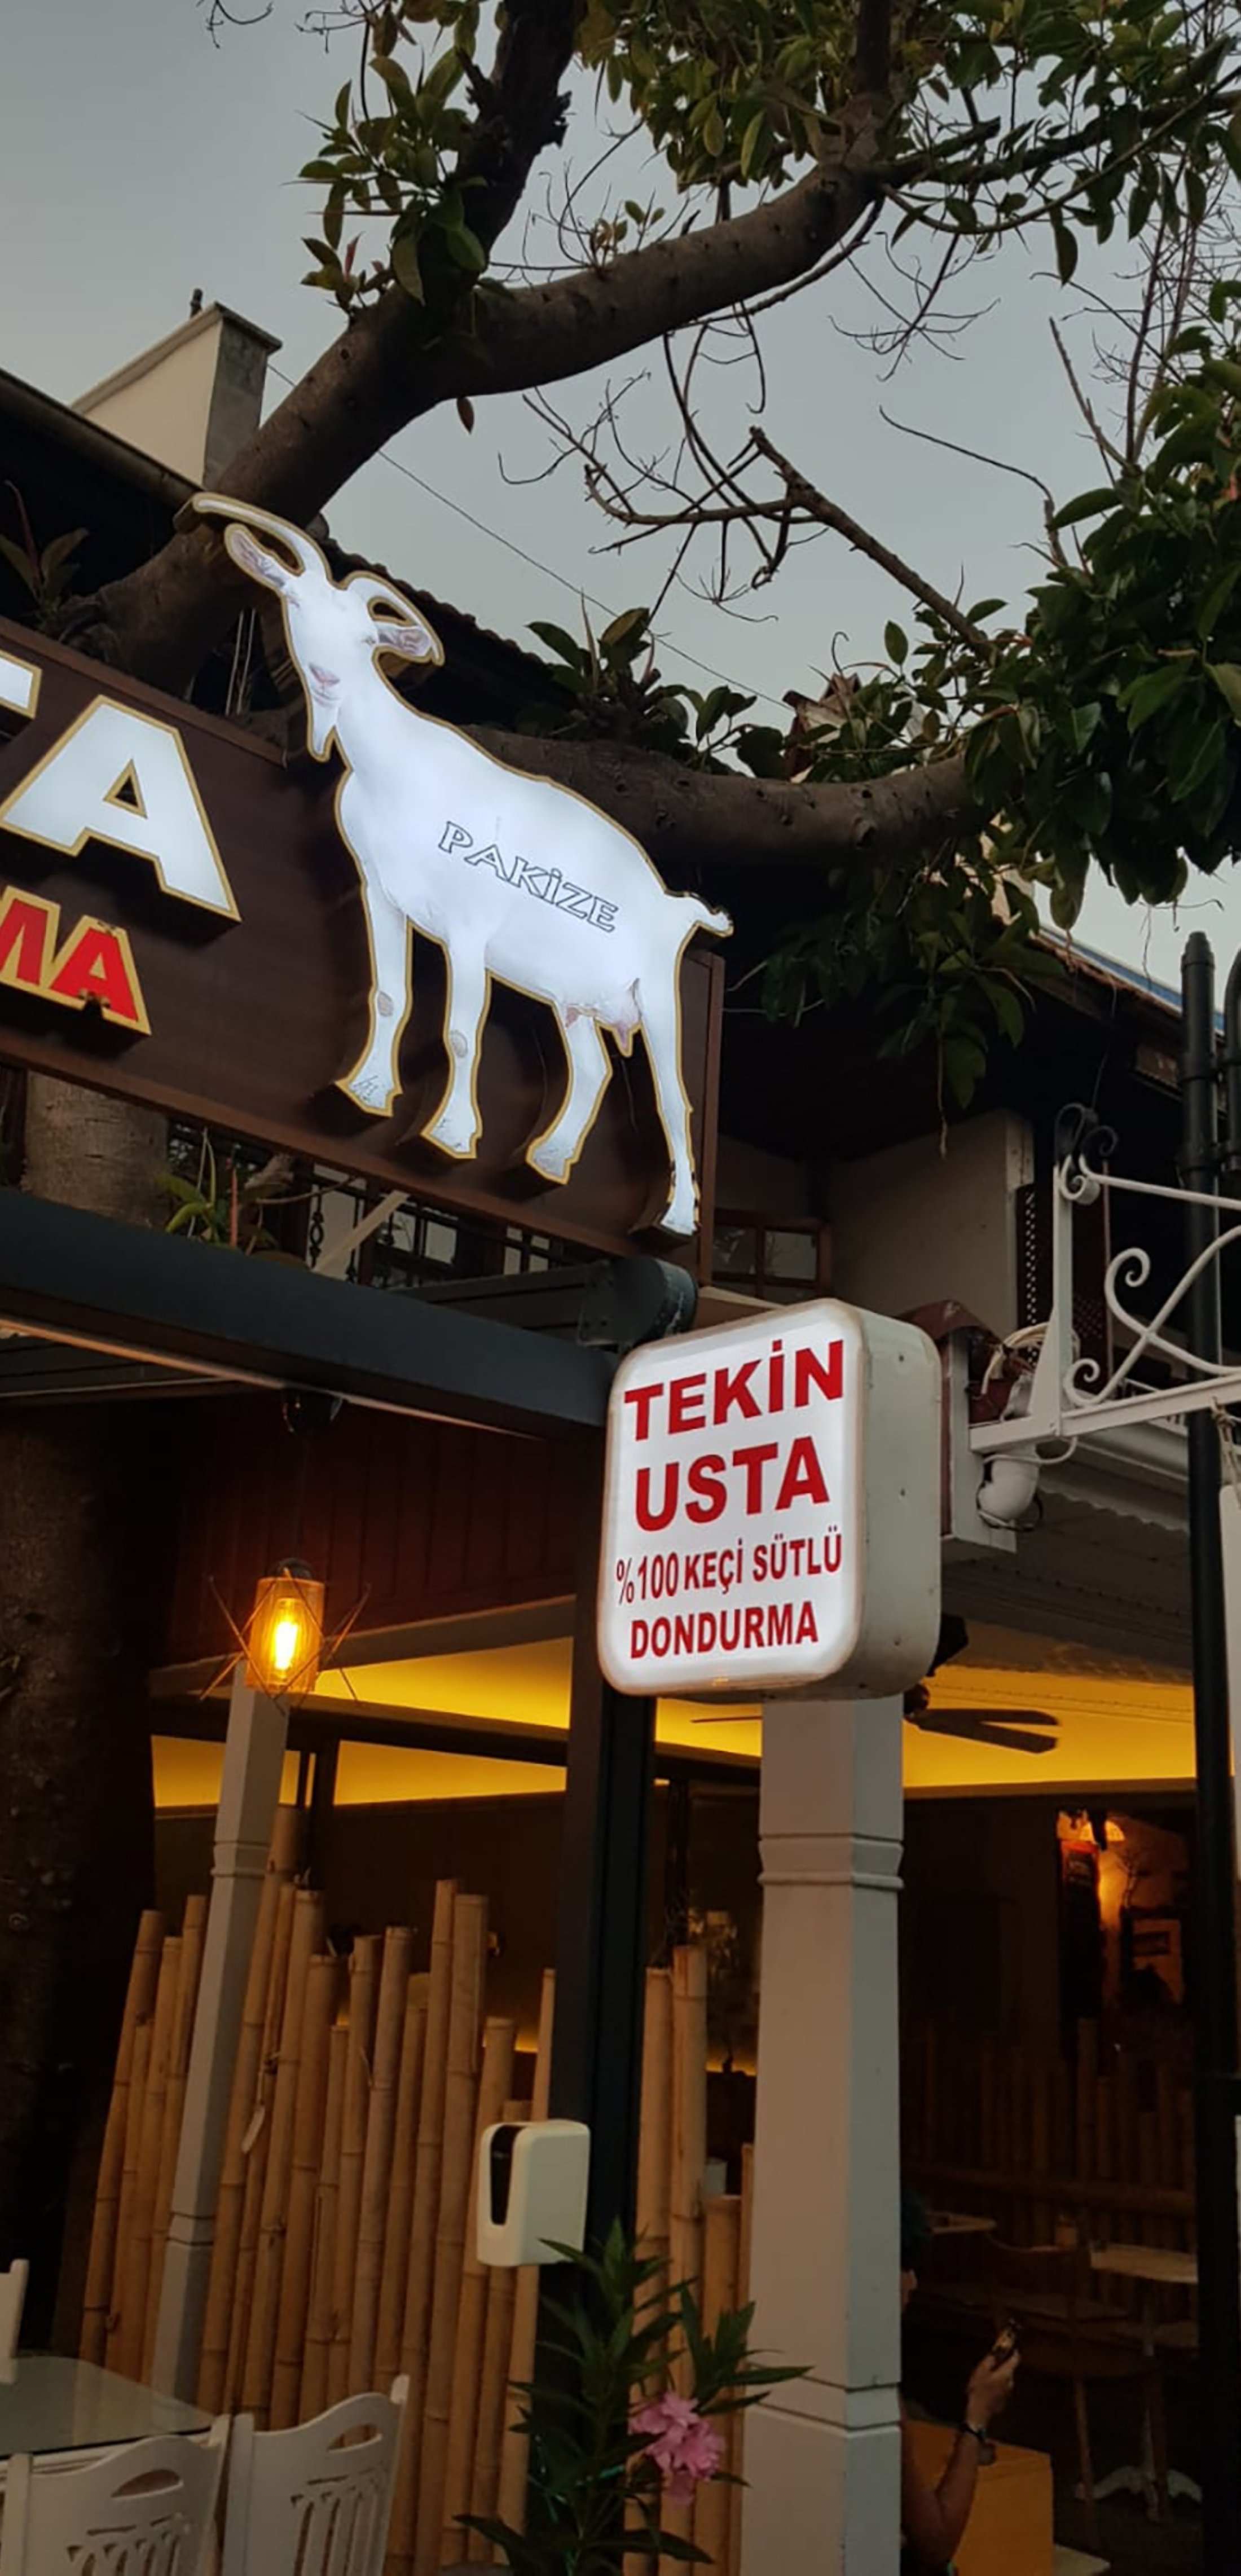 Tekin Usta Keçi Sütü Dondurma Dükkanı Muğla, Türkiye.  (Fotoğraf, Layla Yvonne Argyll'in izniyle)